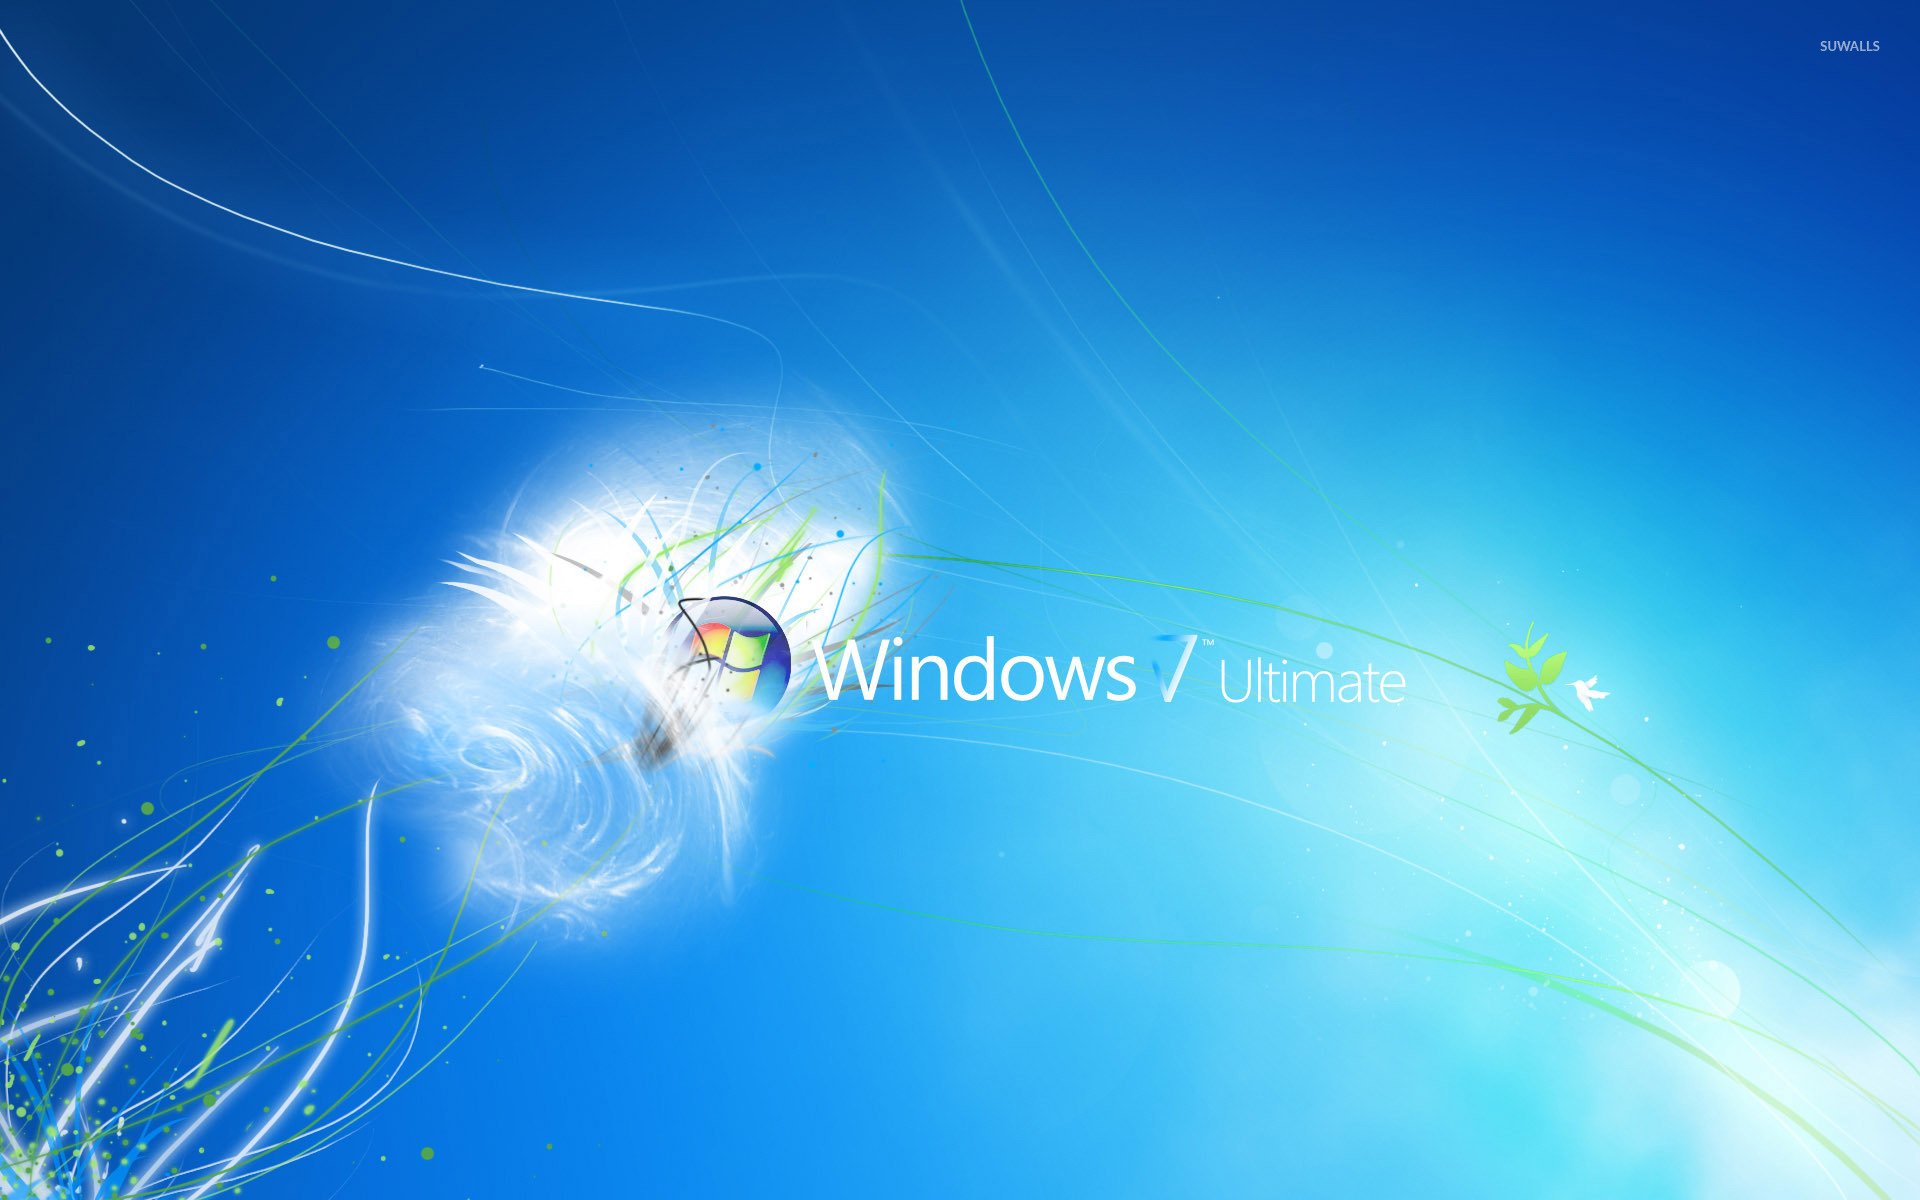 41+] Windows 7 Ultimate Wallpaper 1366x768 - WallpaperSafari